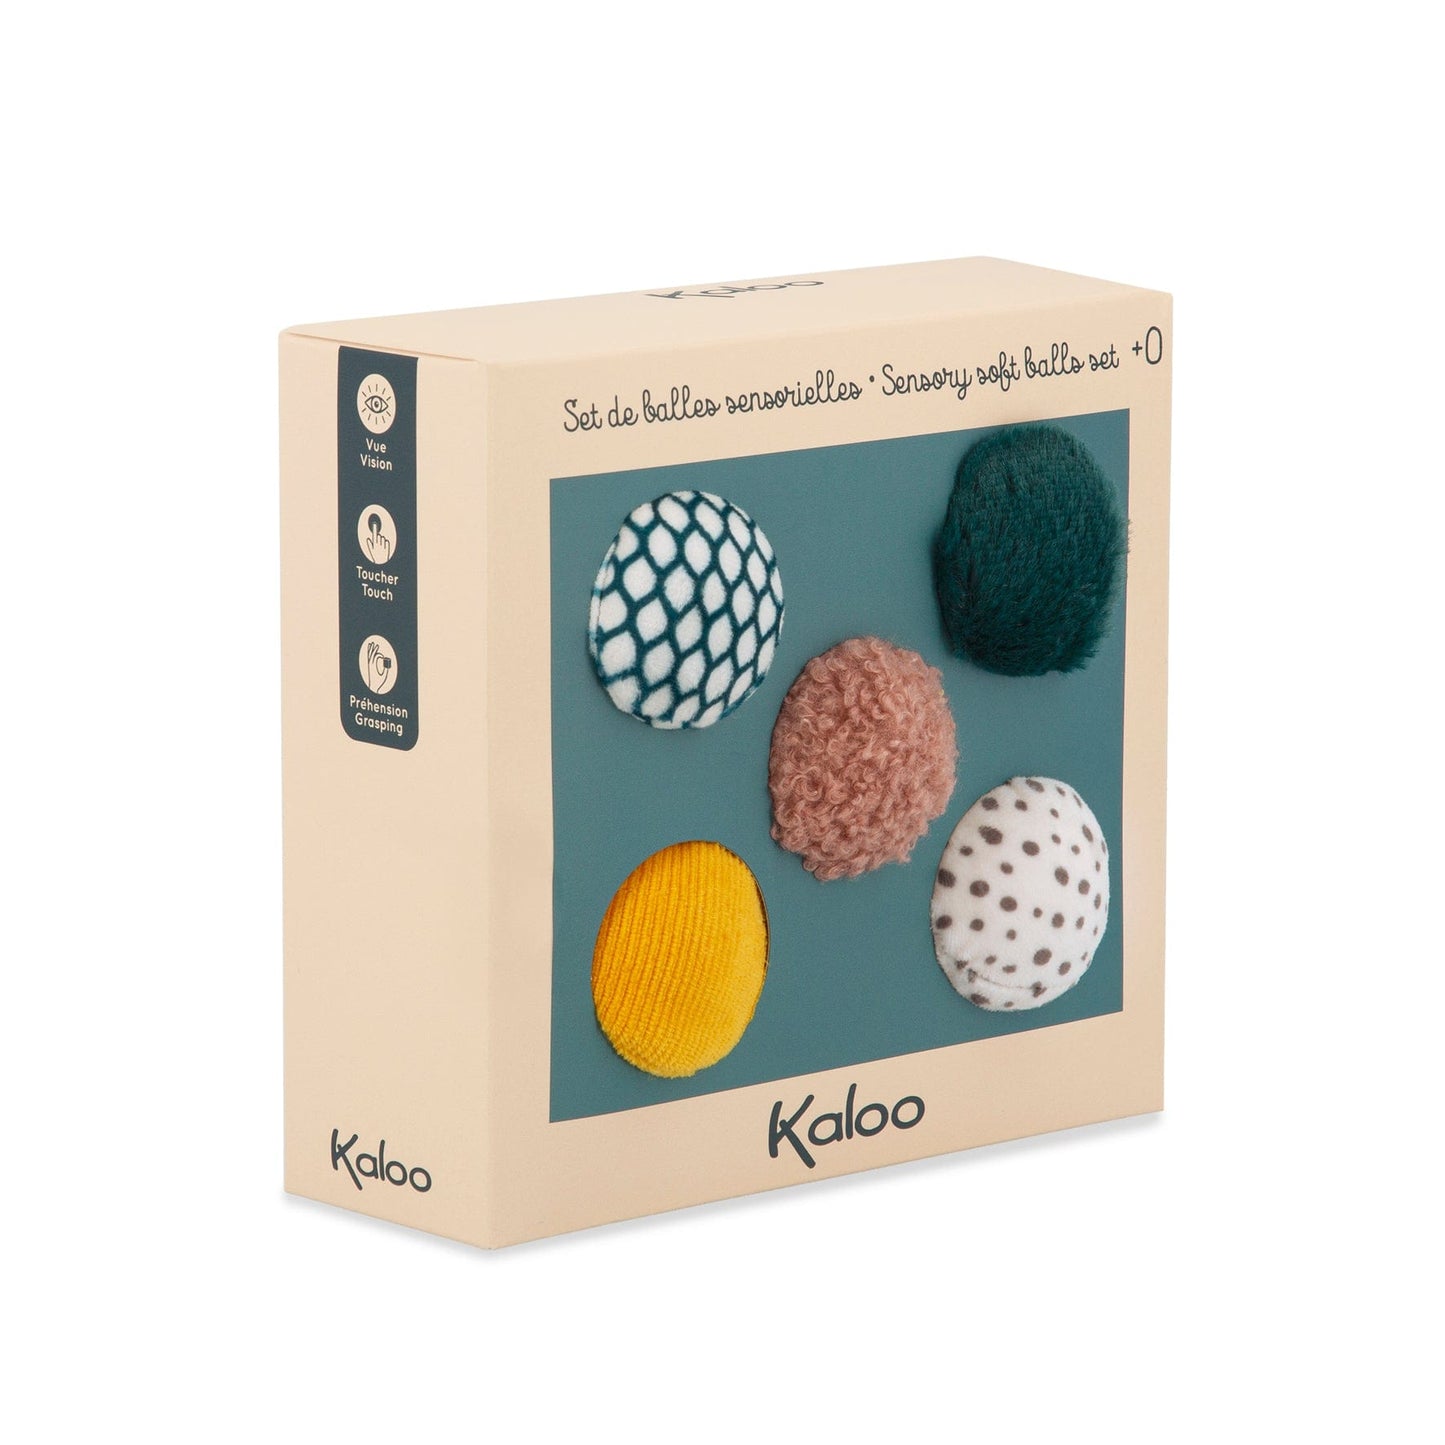 Kaloo Sensory soft balls set